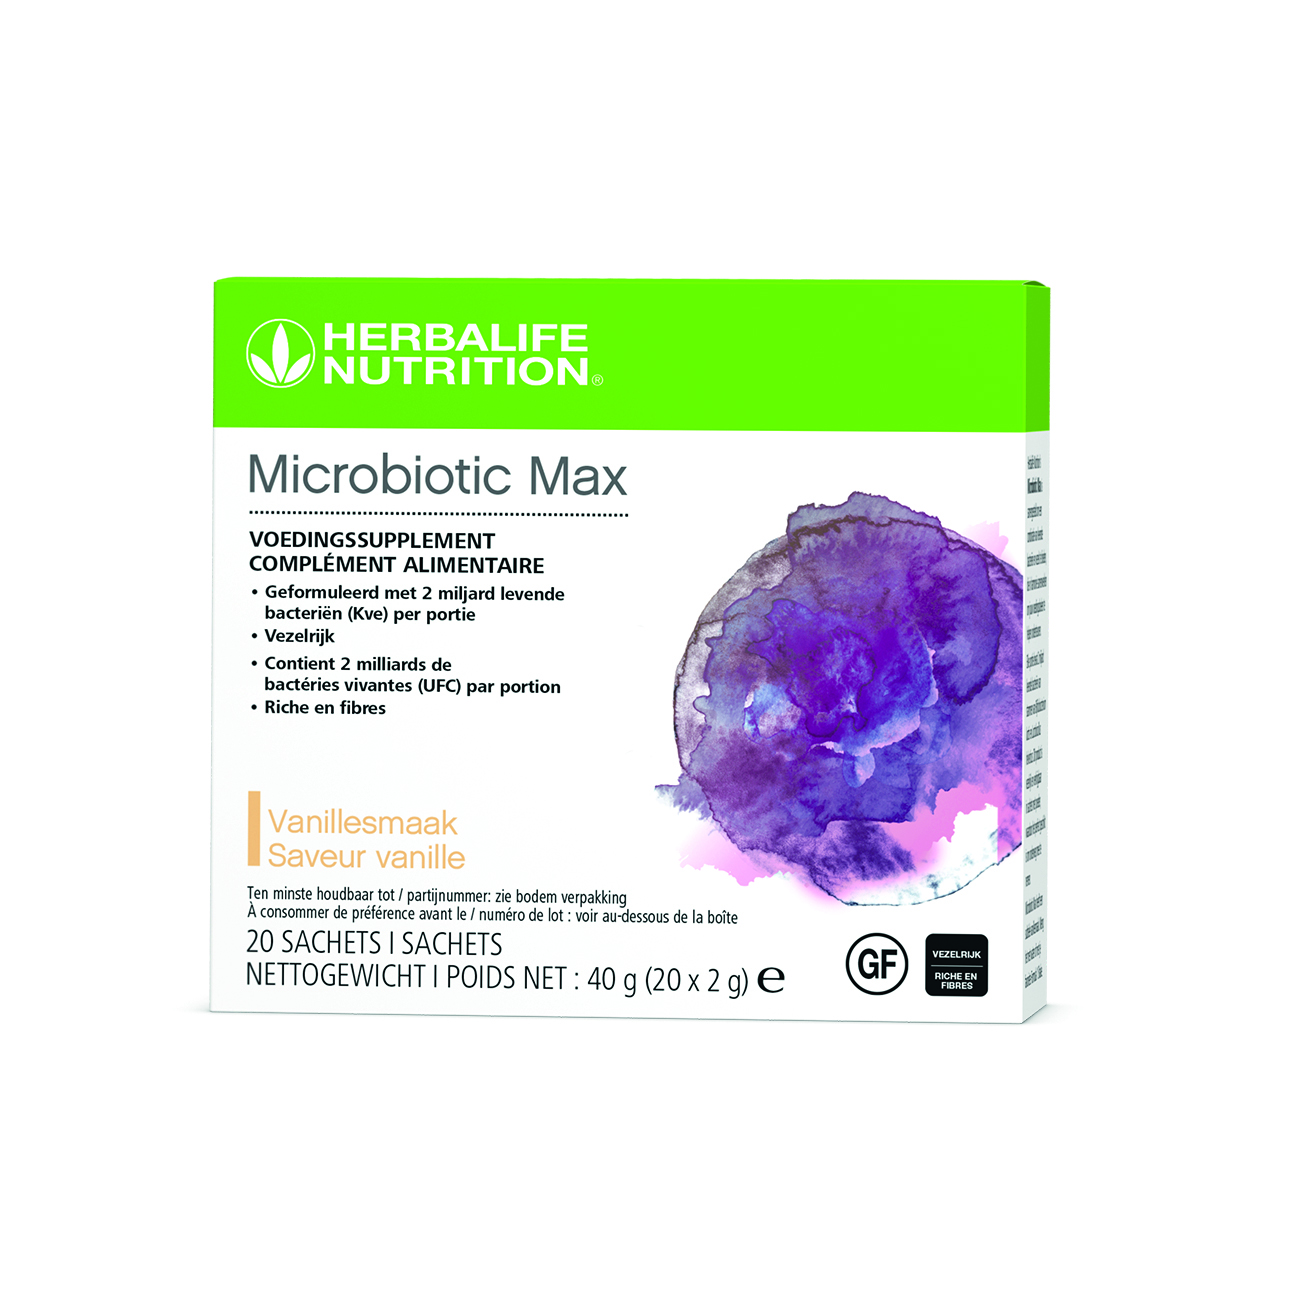 Microbiotic Max, complément alimentaire en poudre formulé avec une combinaison de probiotiques et de fibres prébiotiques.